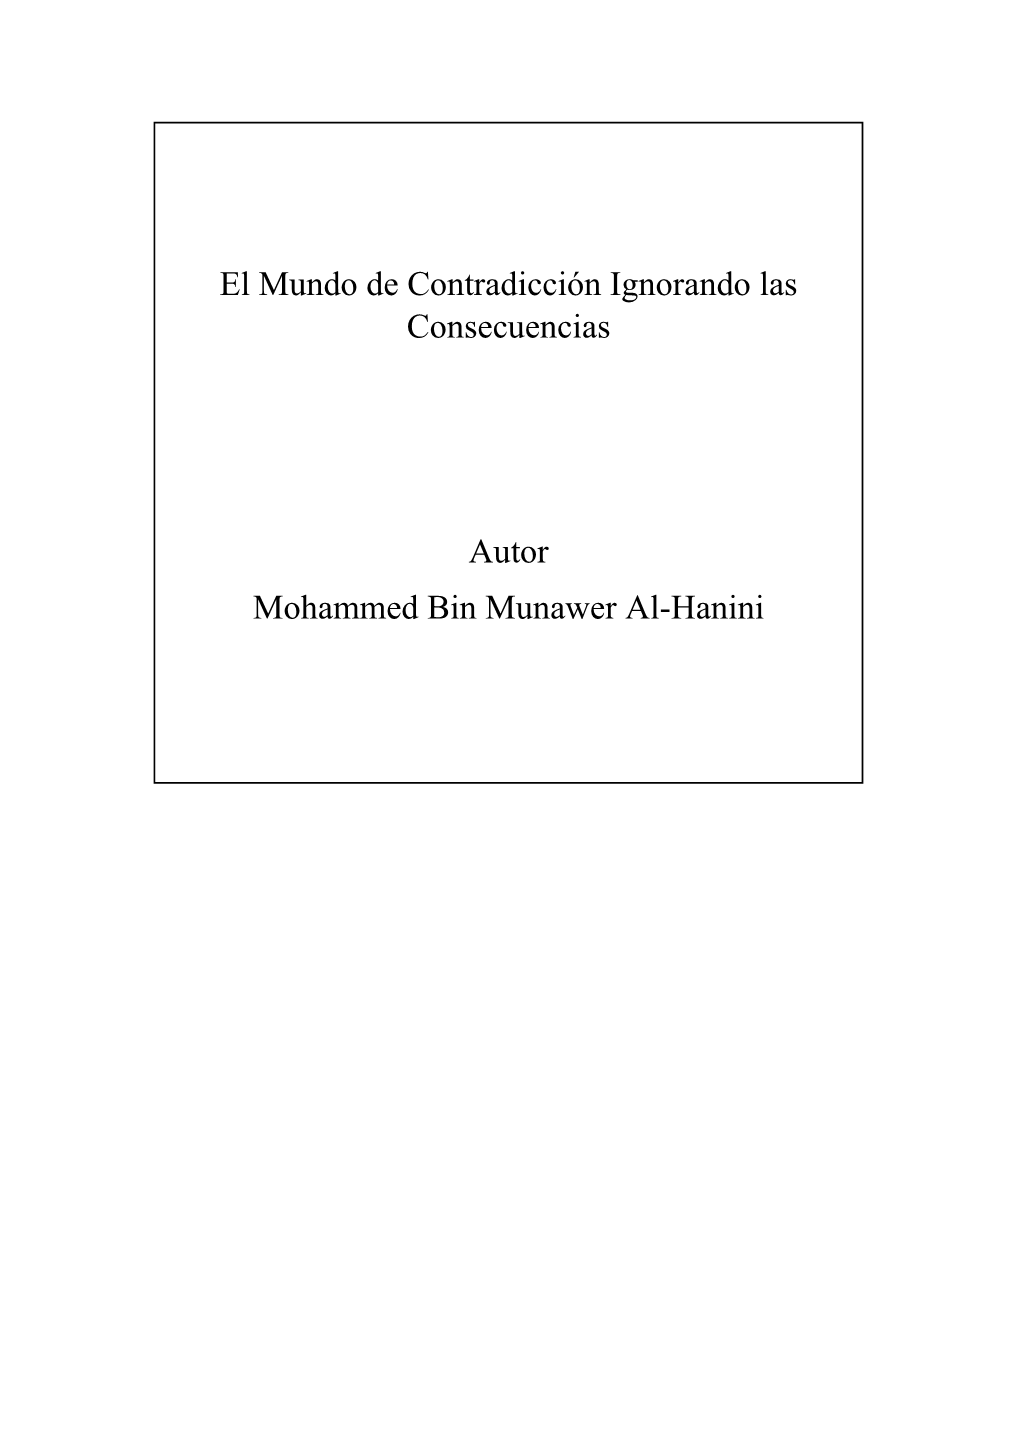 El Mundo De Contradicción Ignorando Las Consecuencias Autor Mohammed Bin Munawer Al-Hanini